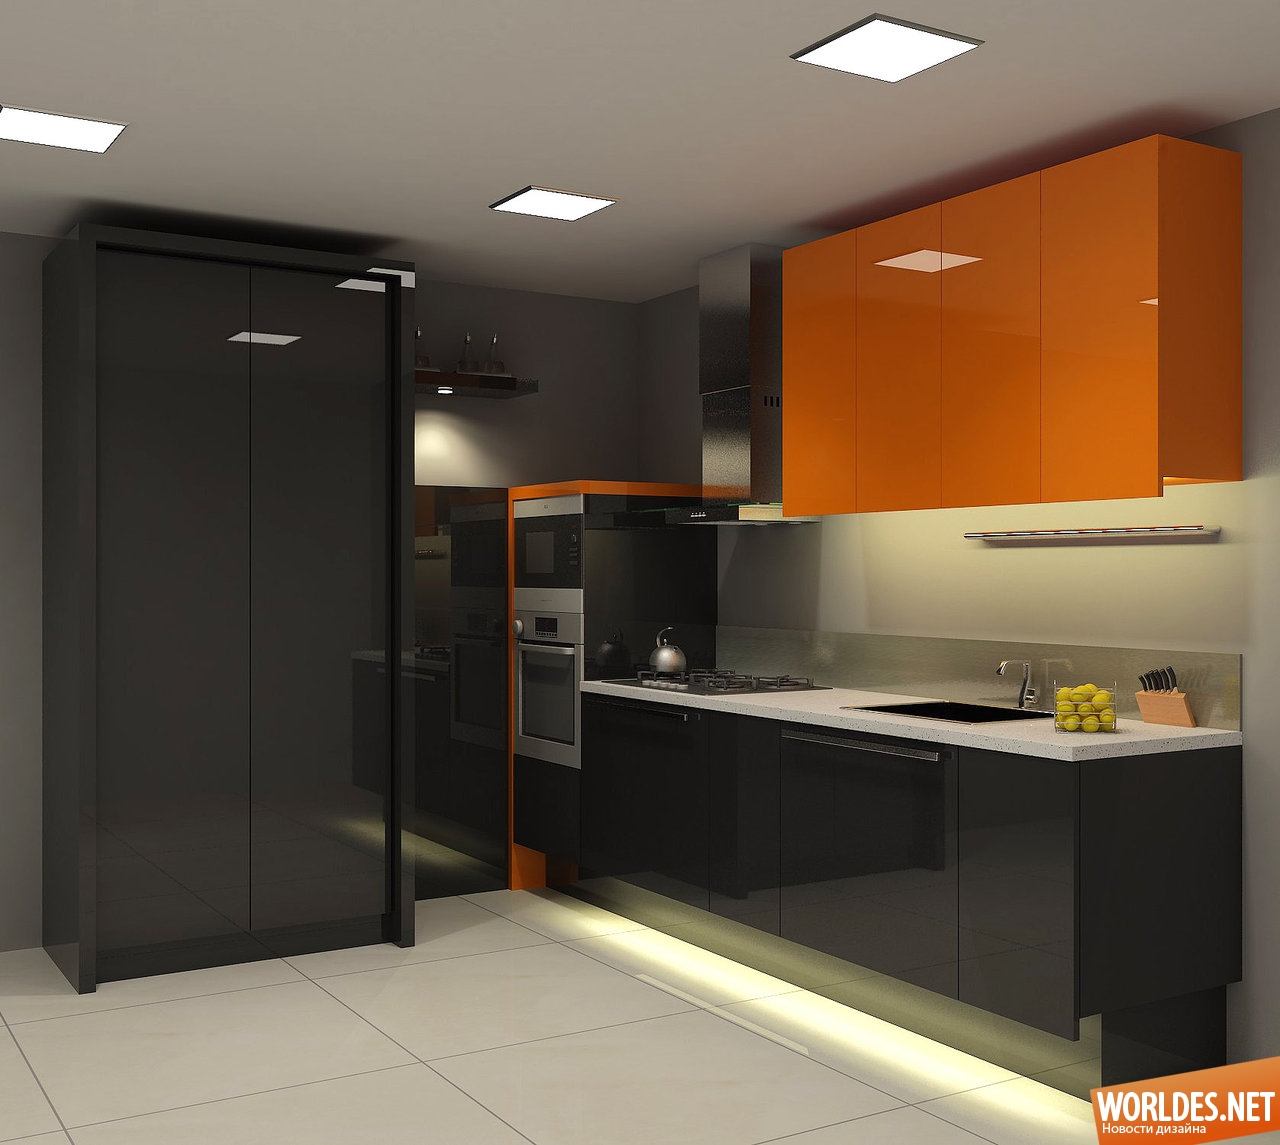 кухня в оранжевом цвете, дизайн кухни, интерьер кухни, интерьер оранжевой кухни, оранжевая кухня, дизайн оранжевой кухни